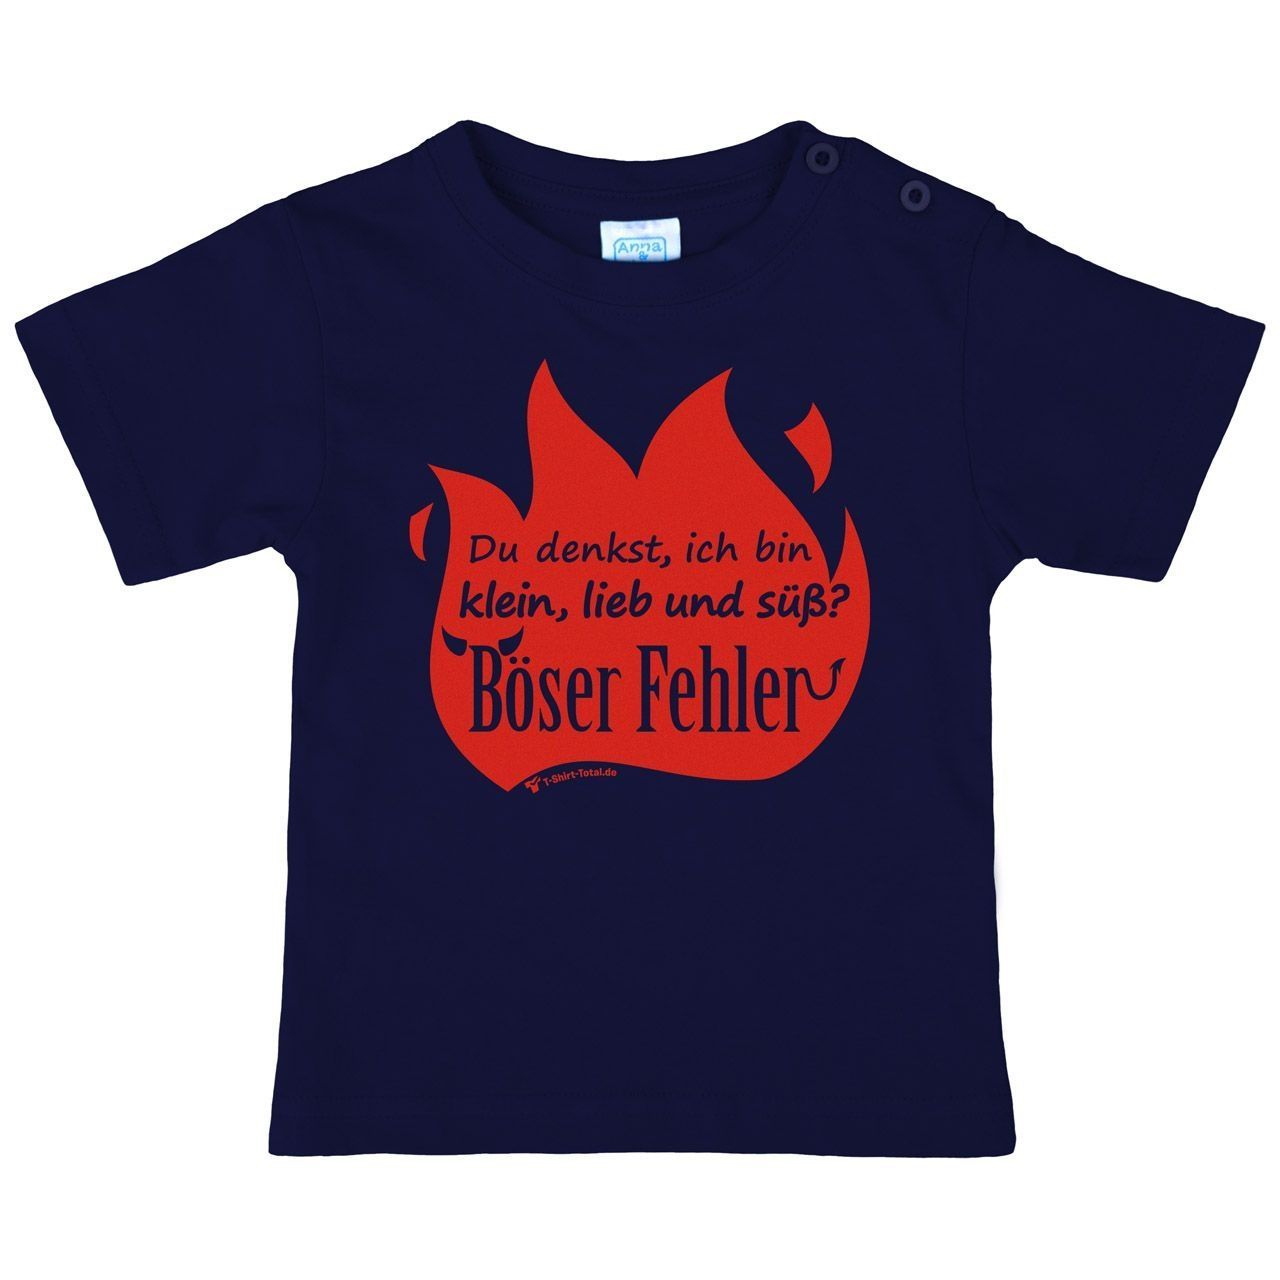 Böser Fehler Kinder T-Shirt navy 80 / 86